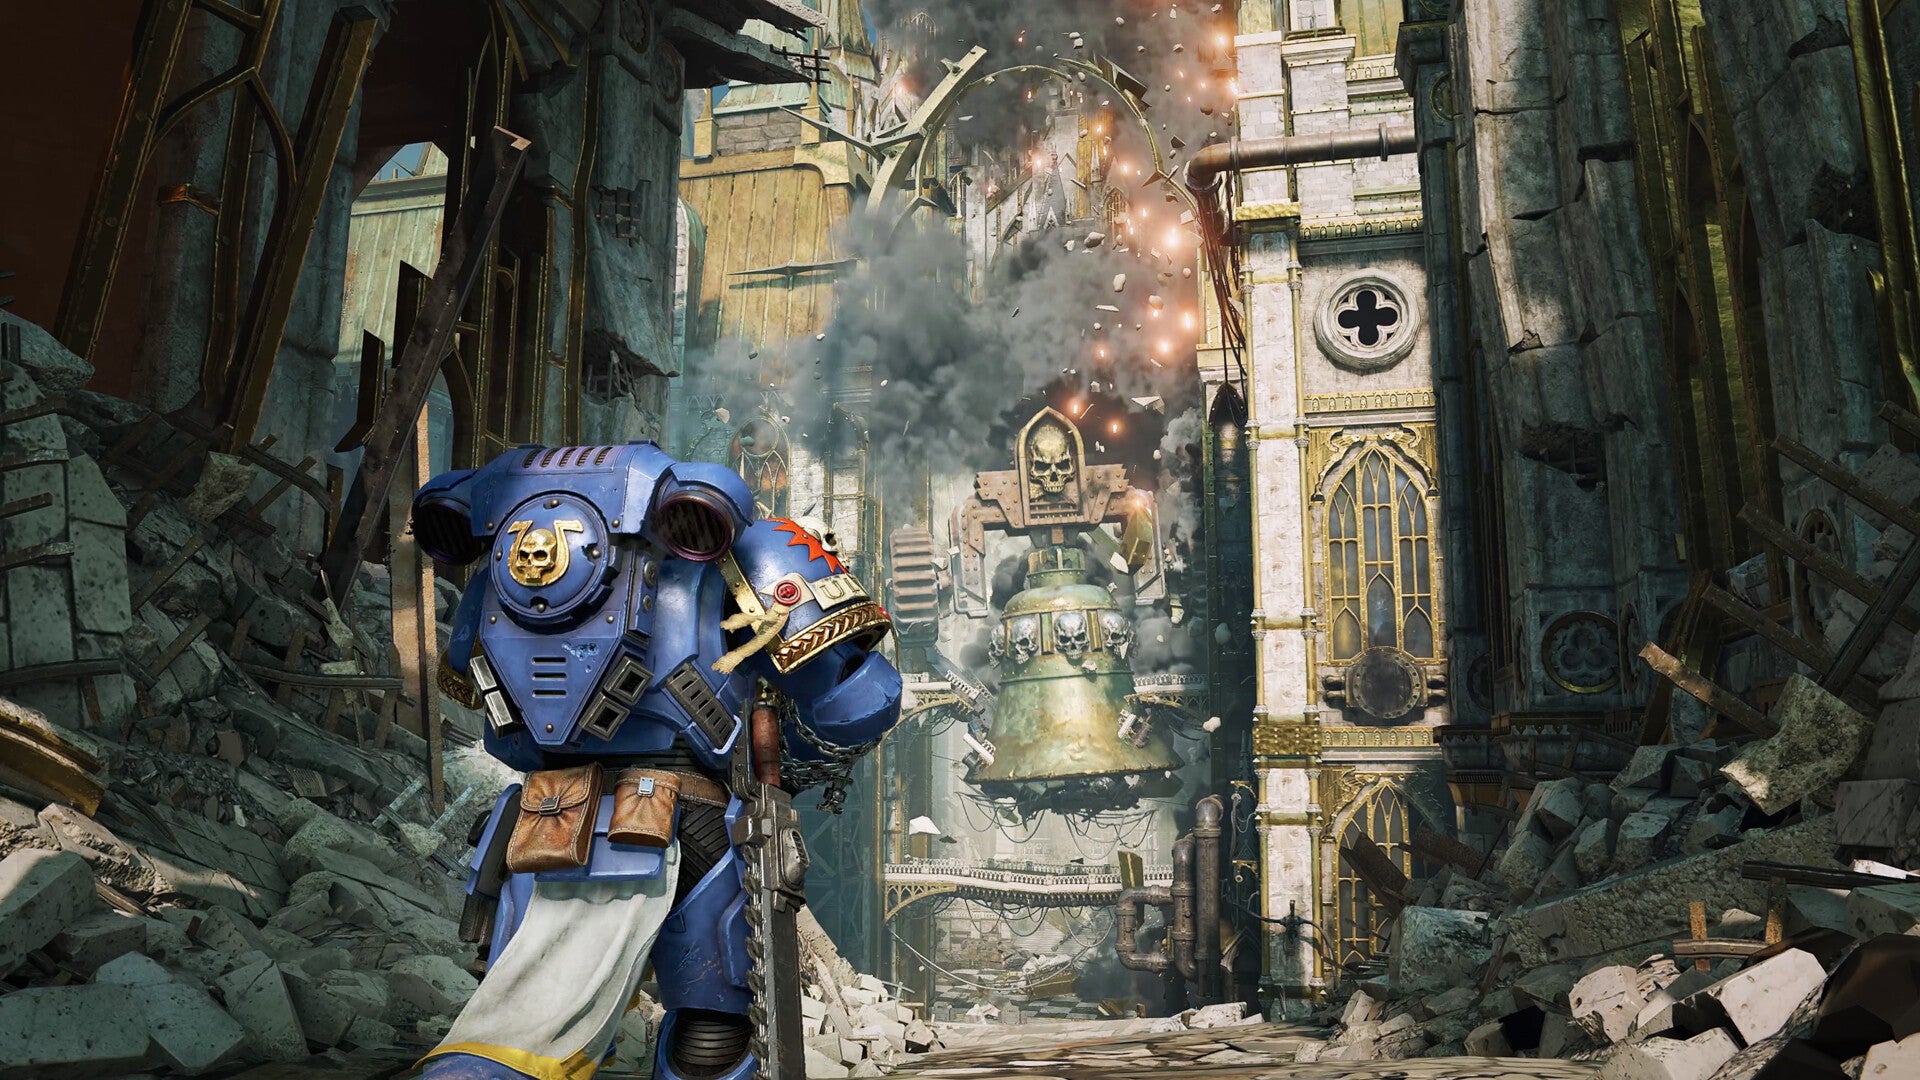 Un Space Marine de couleur bleue marche vers un immeuble immense qui s'effondre devant lui.